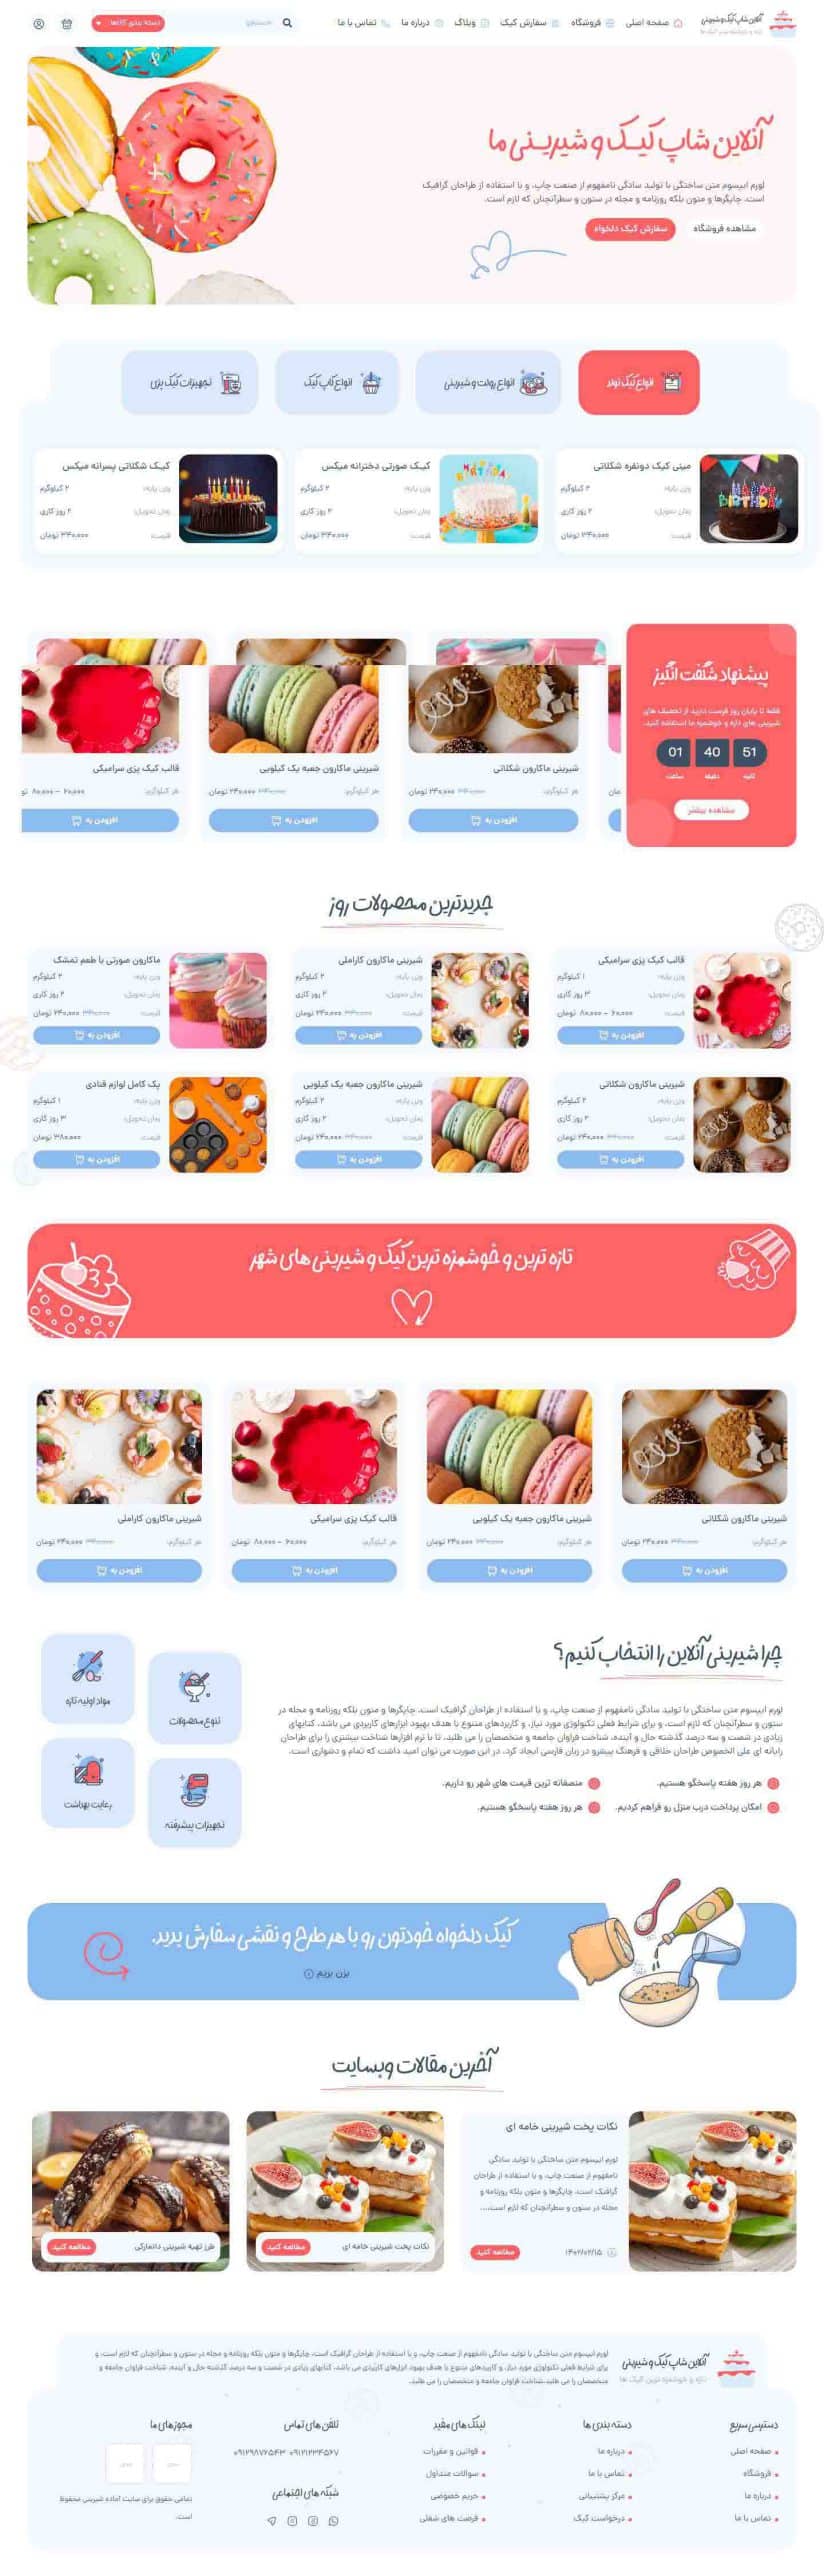 طراحی سایت فروشگاه شیرینی و قنادی